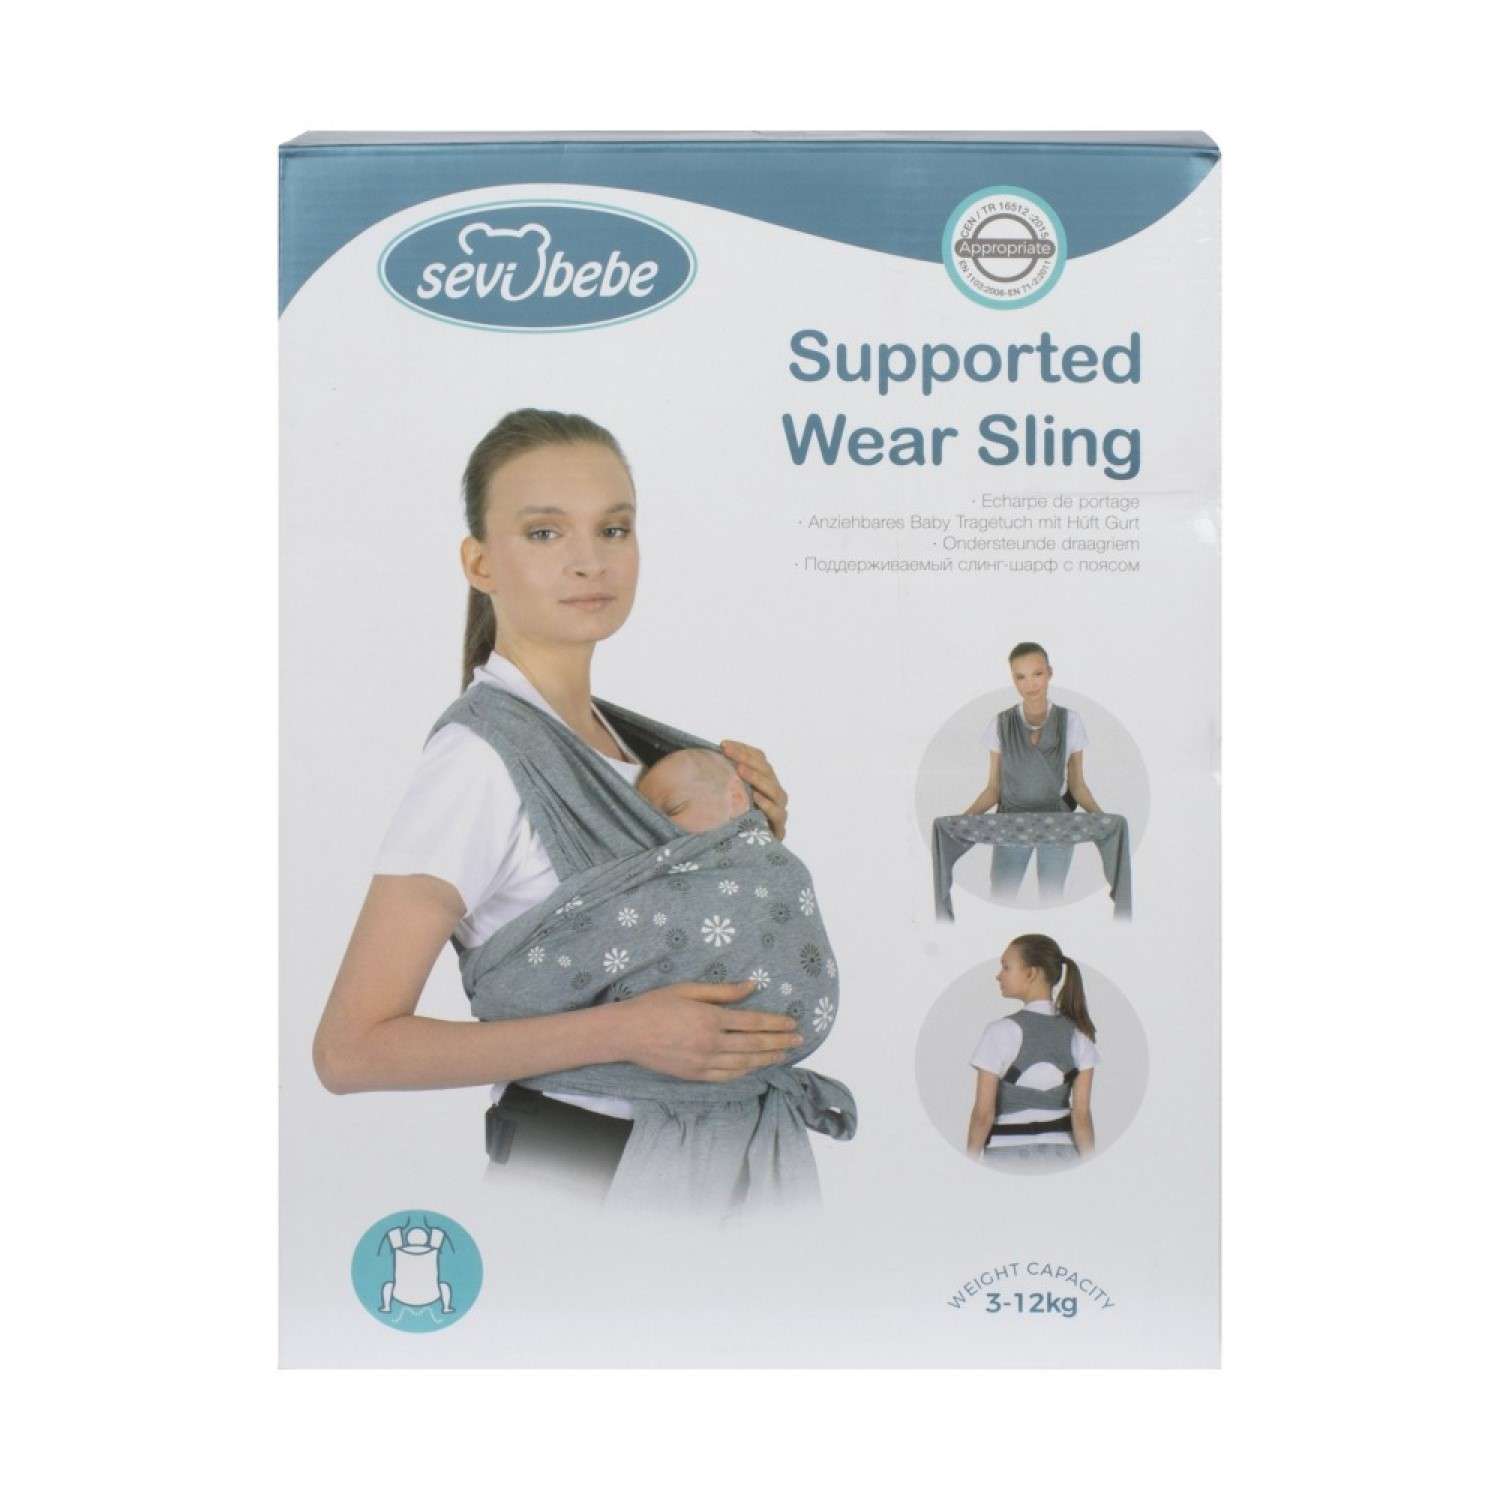 Слинг-шарф SEVIBEBE с функцией поддержки спины родителя для деток весом 3-12 кг - фото 8